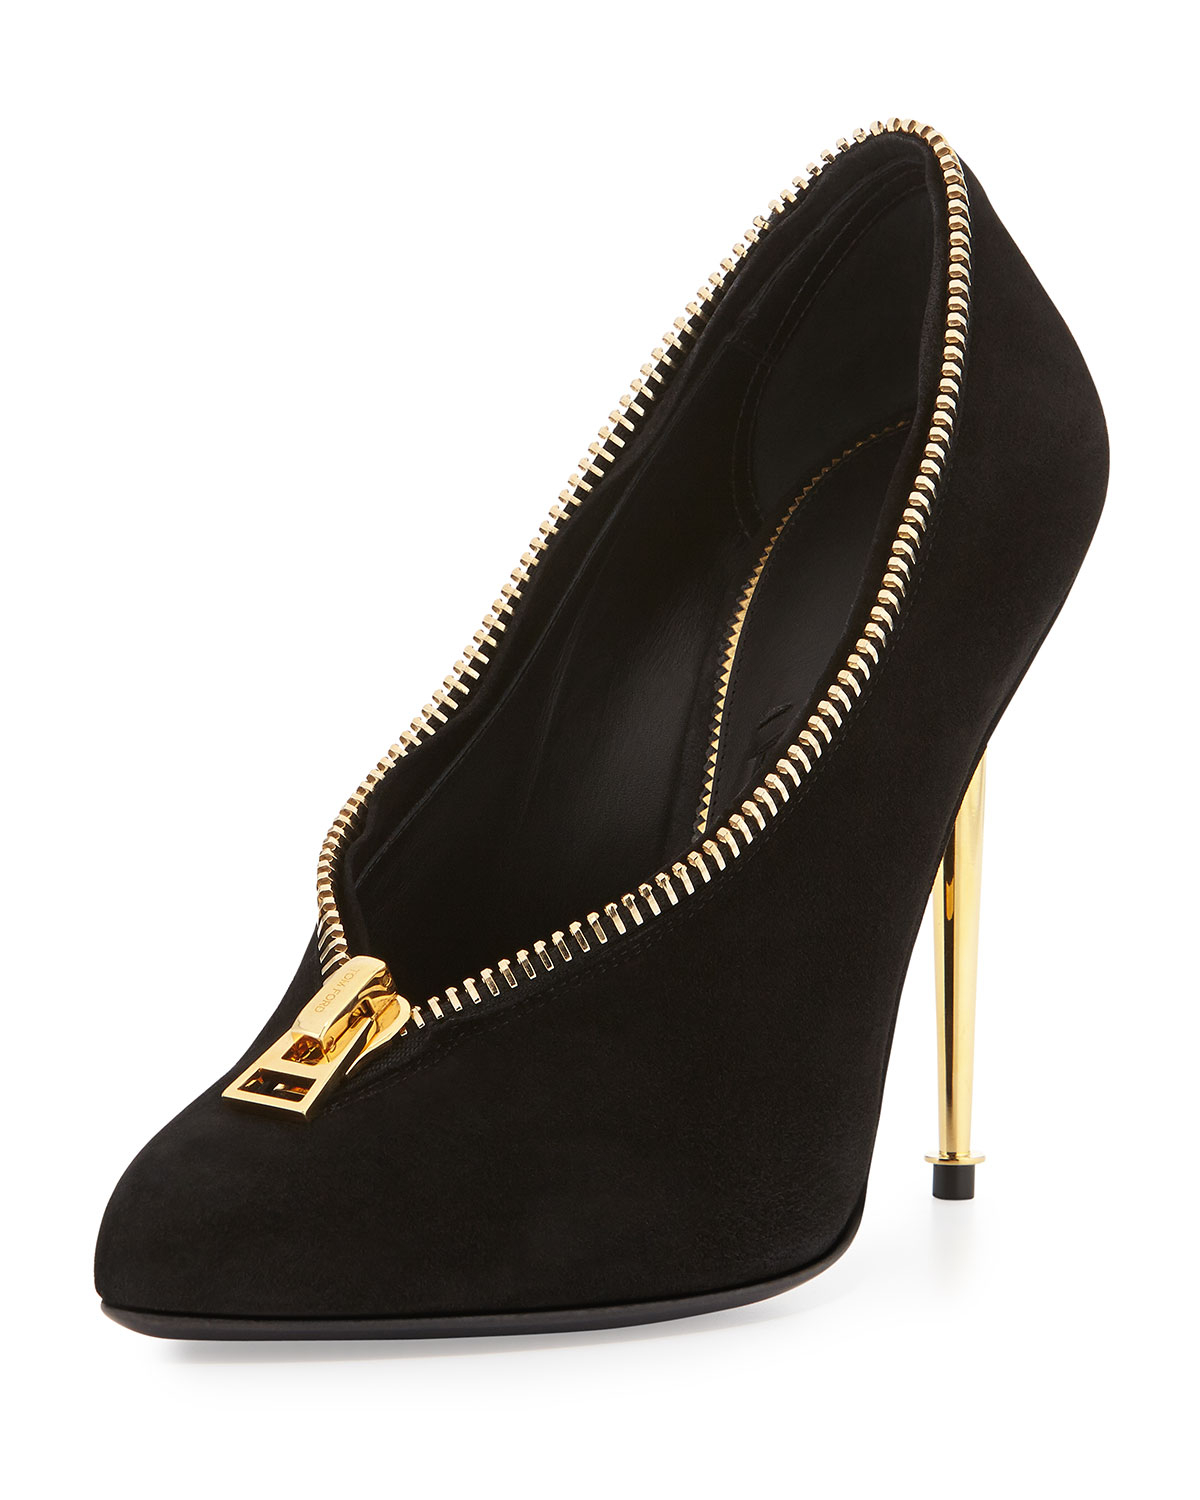 heels with zipper